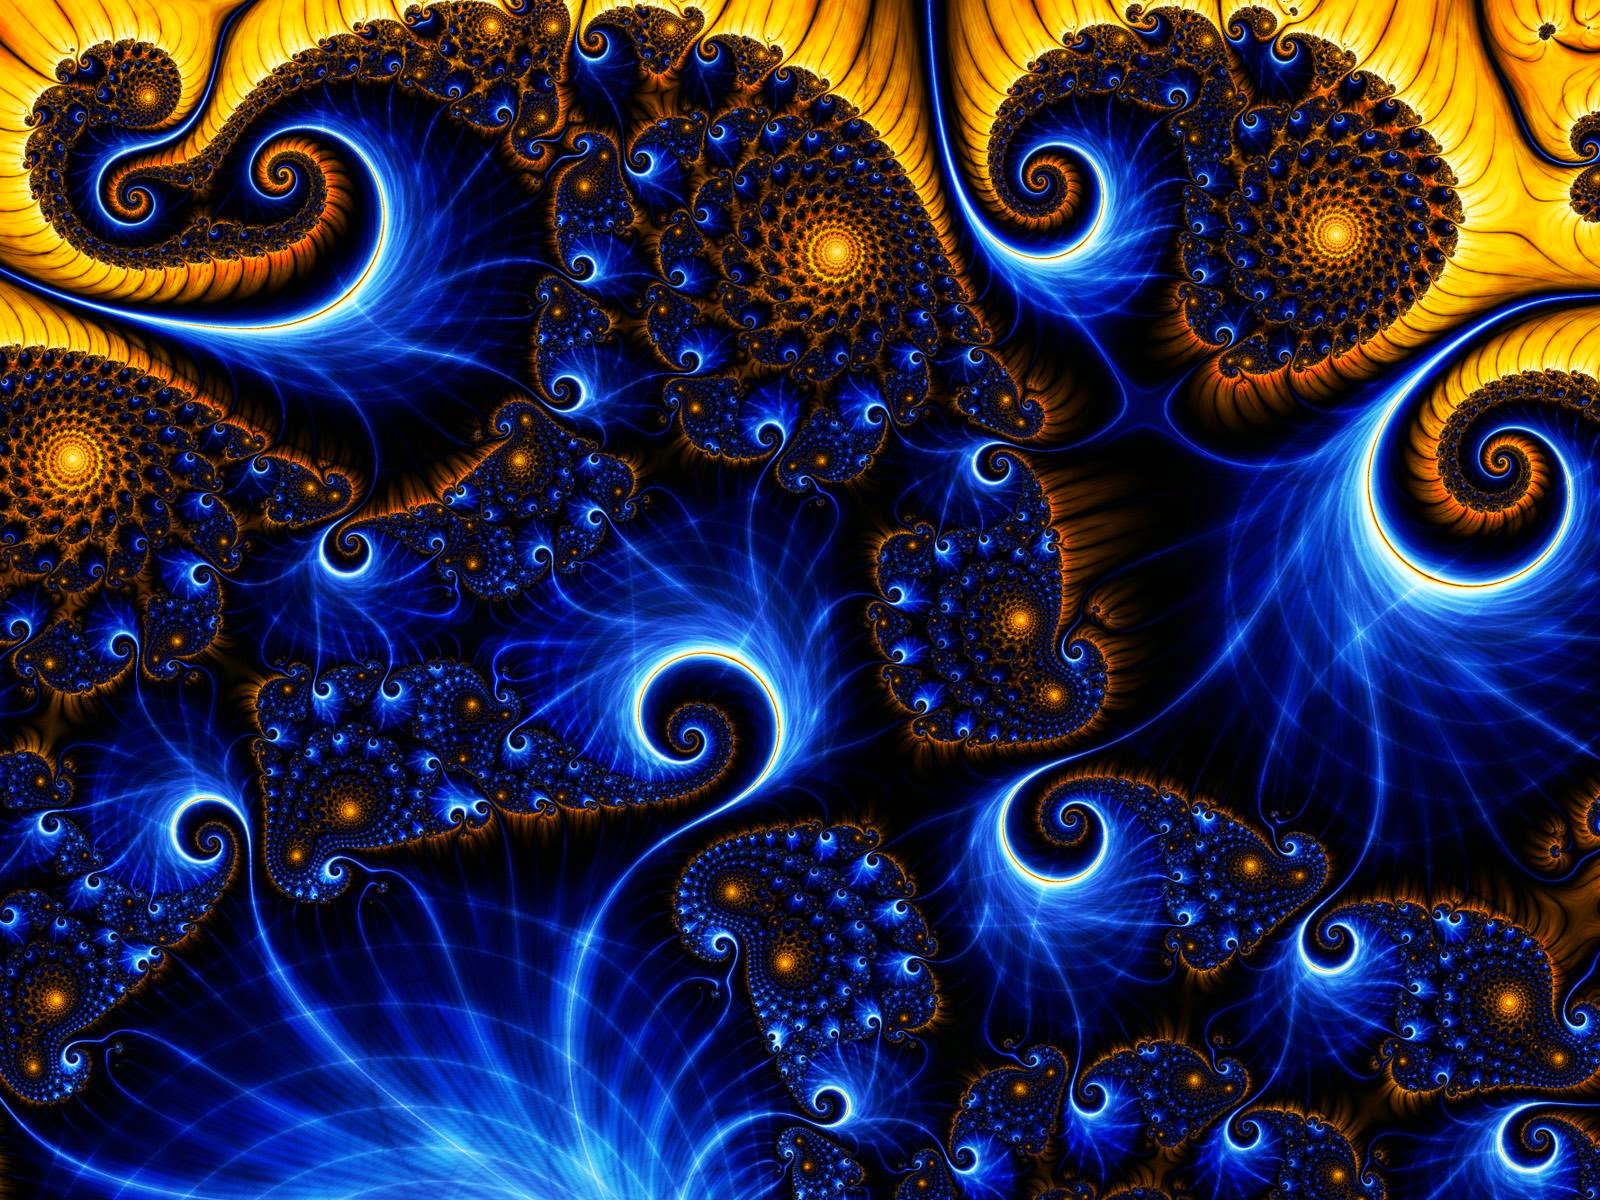 polaridad tantrica amarillo azul fractal tantra press tantraesdevocion inciensoshop blog de tantra Shivaismo de cachemira advaita Vedanta y espiritualidad hindu